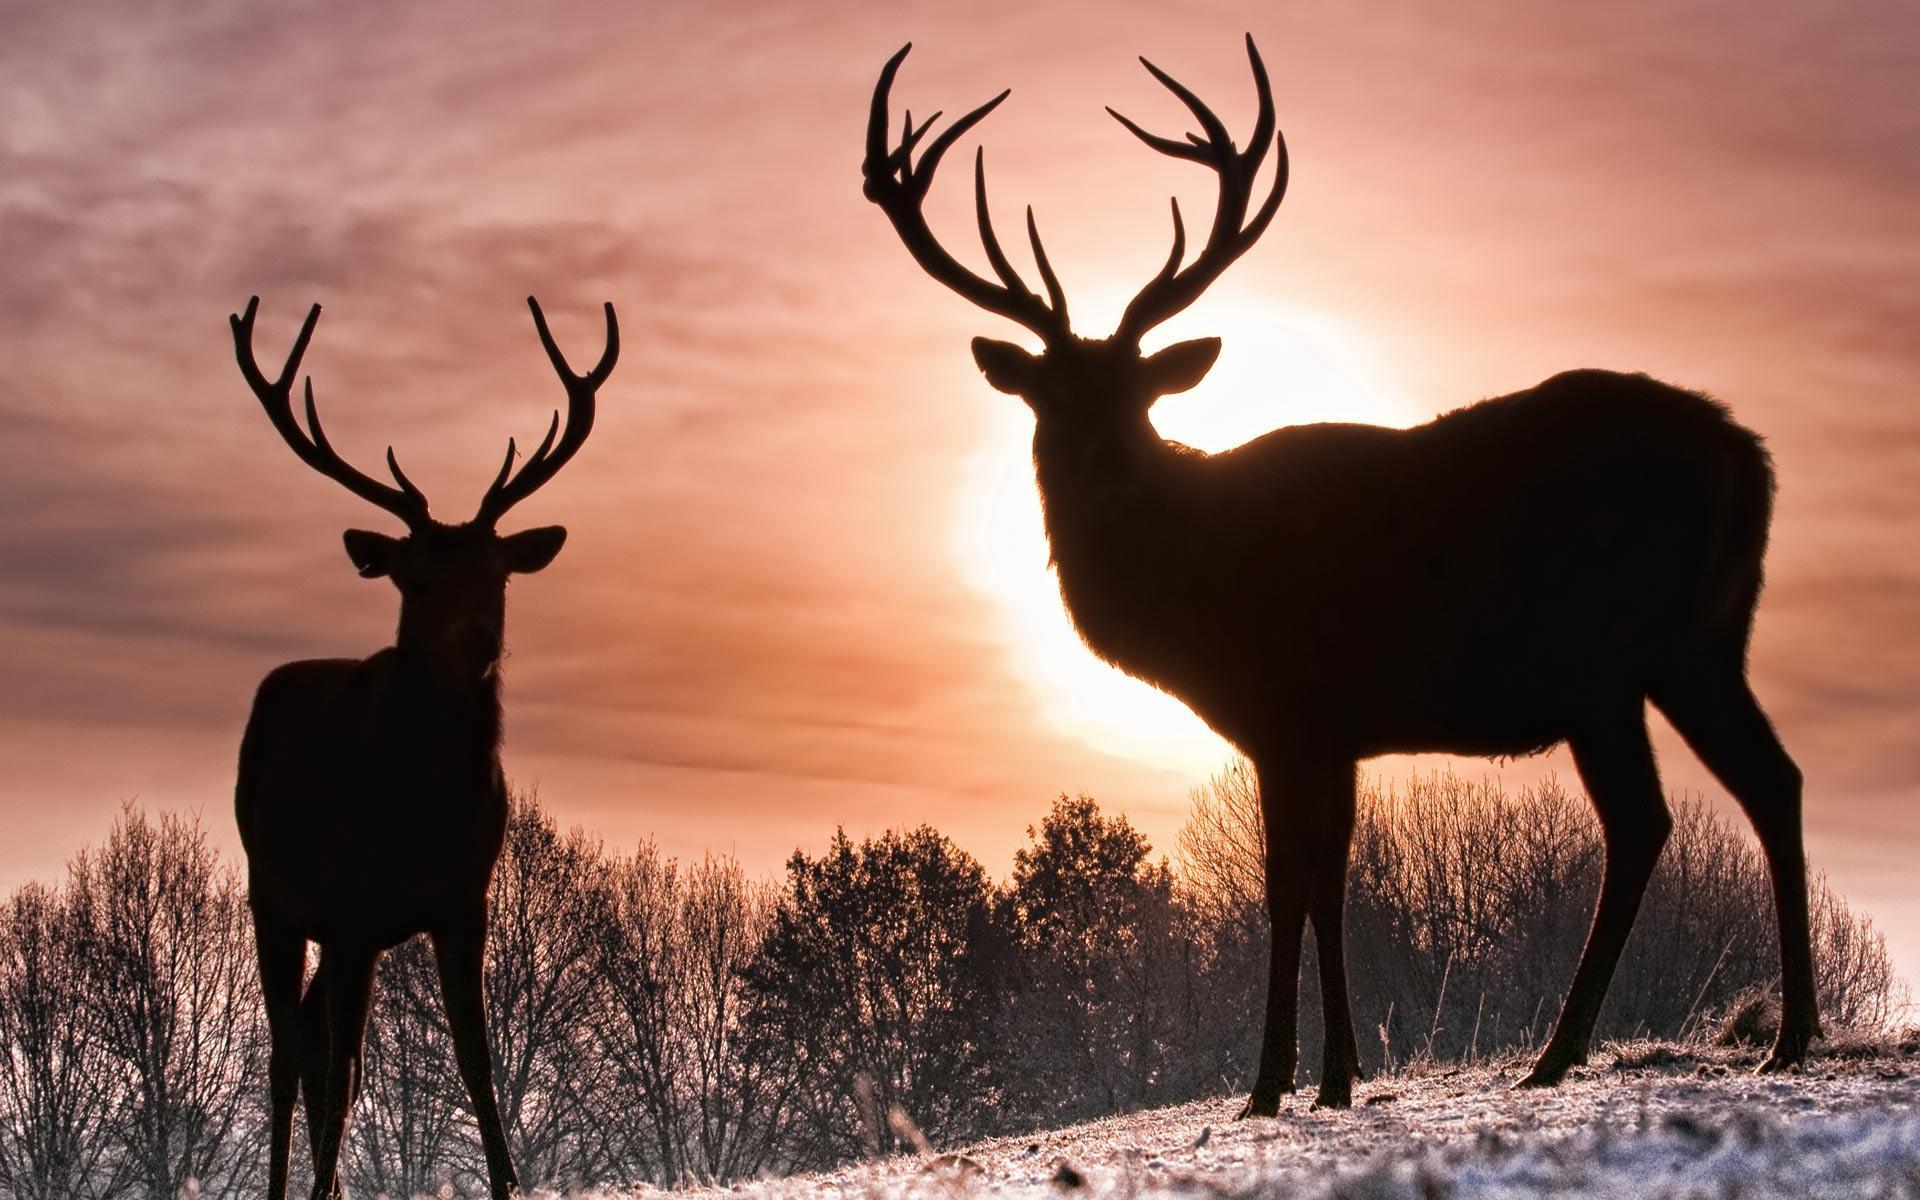 Desktop Wallpaper · Gallery · Animals · Young deer buck. Free